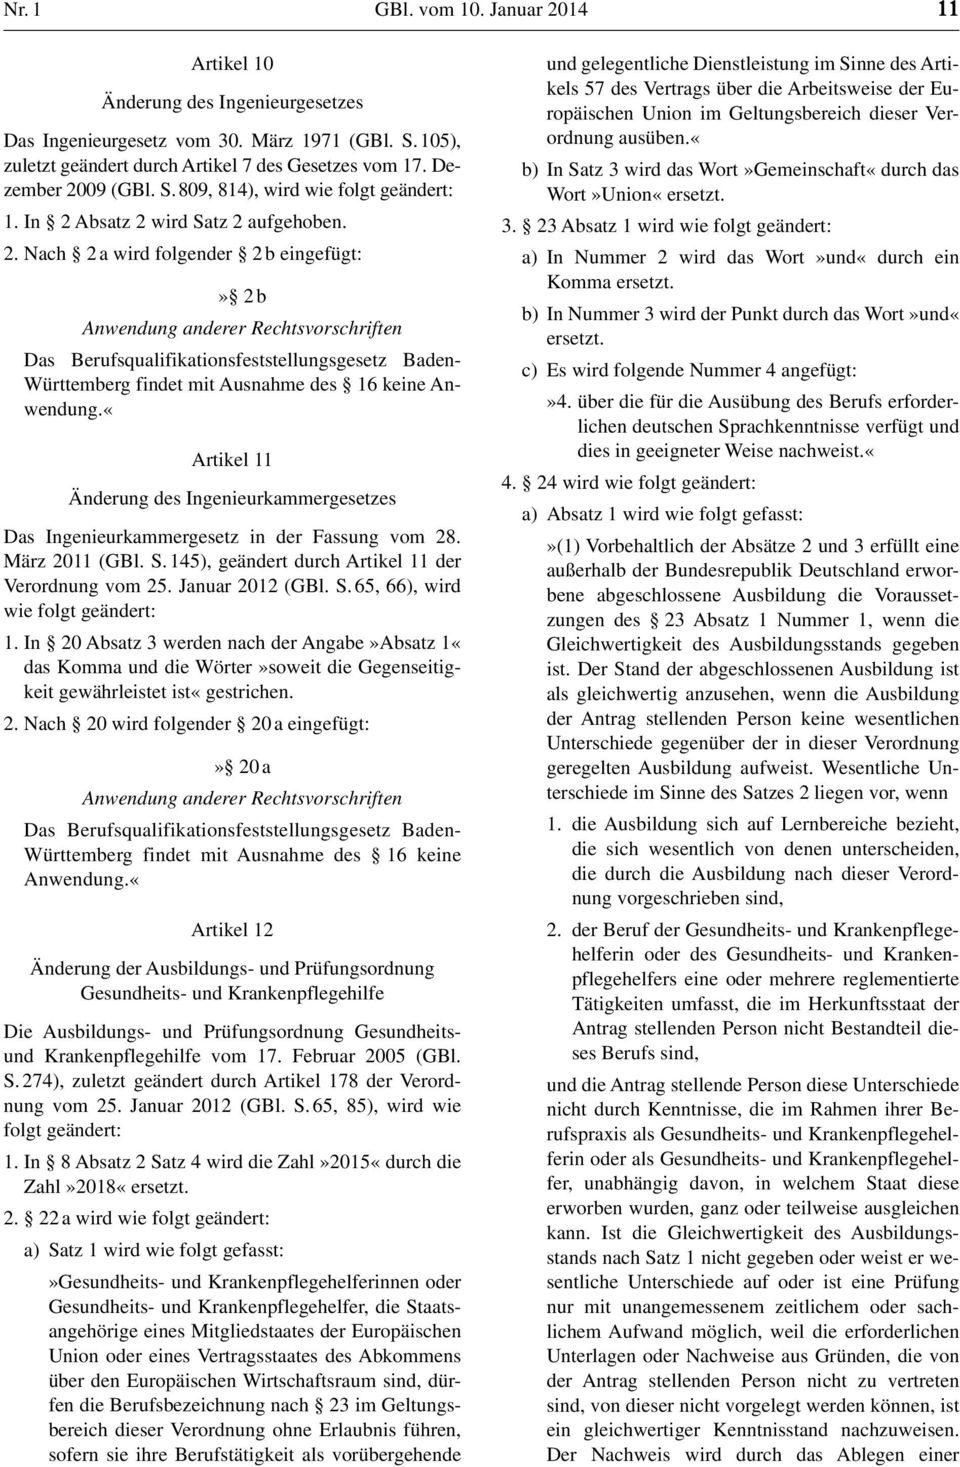 «Artikel 11 Änderung des Ingenieurkammergesetzes Das Ingenieurkammergesetz in der Fassung vom 28. März 2011 (GBl. S. 145), geändert durch Artikel 11 der Verordnung vom 25. Januar 2012 (GBl. S. 65, 66), wird wie folgt geändert: 1.